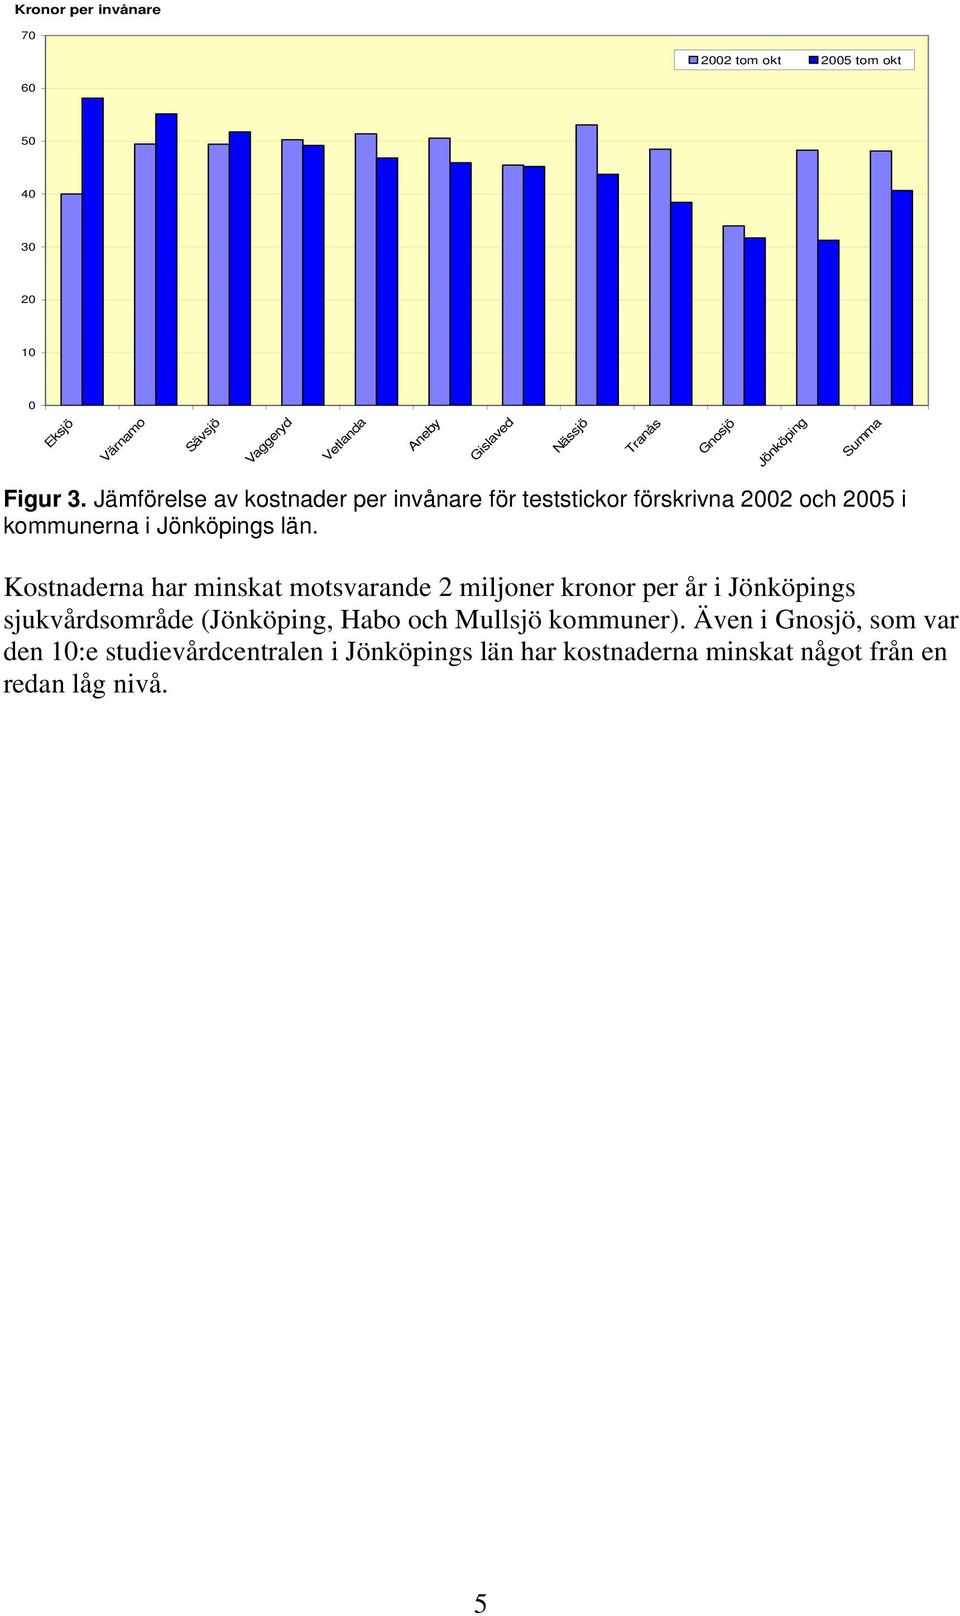 Jämförelse av kostnader per invånare för teststickor förskrivna 2002 och 2005 i kommunerna i Jönköpings län.